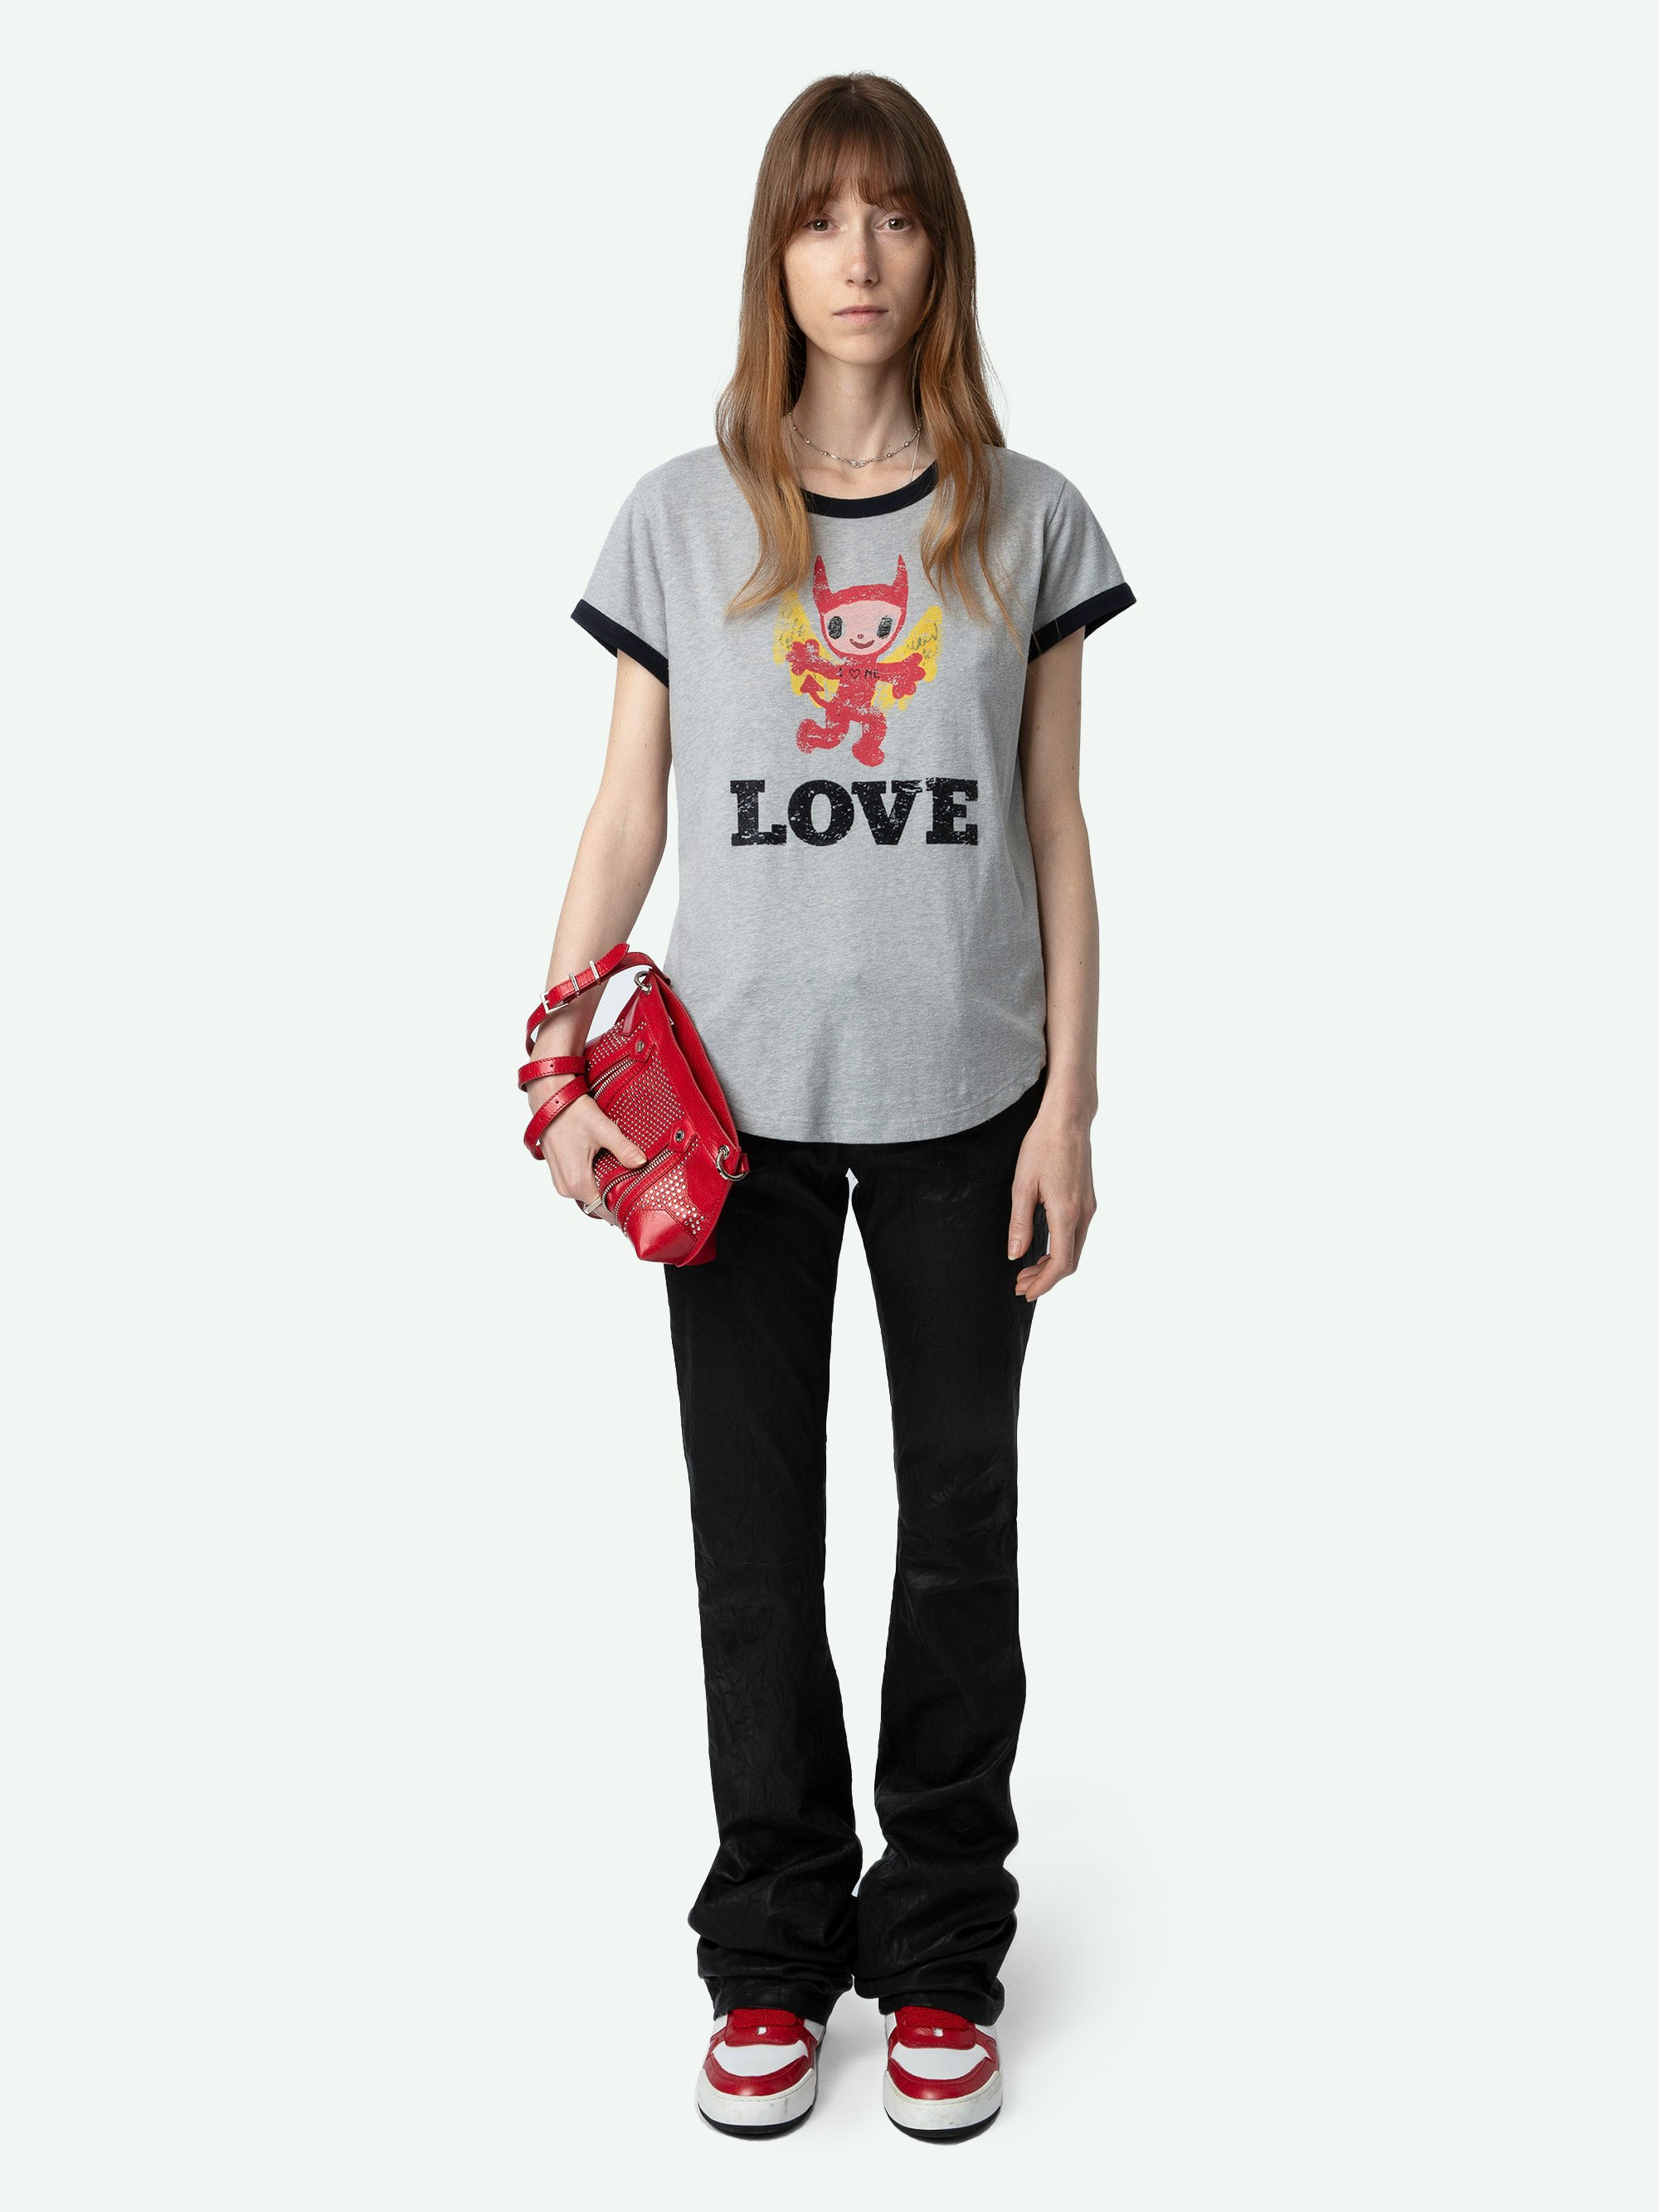 T-shirt Woop Devil - T-shirt gris chiné à manches courtes, bords contrastés et imprimé Devil Love à l'avant.